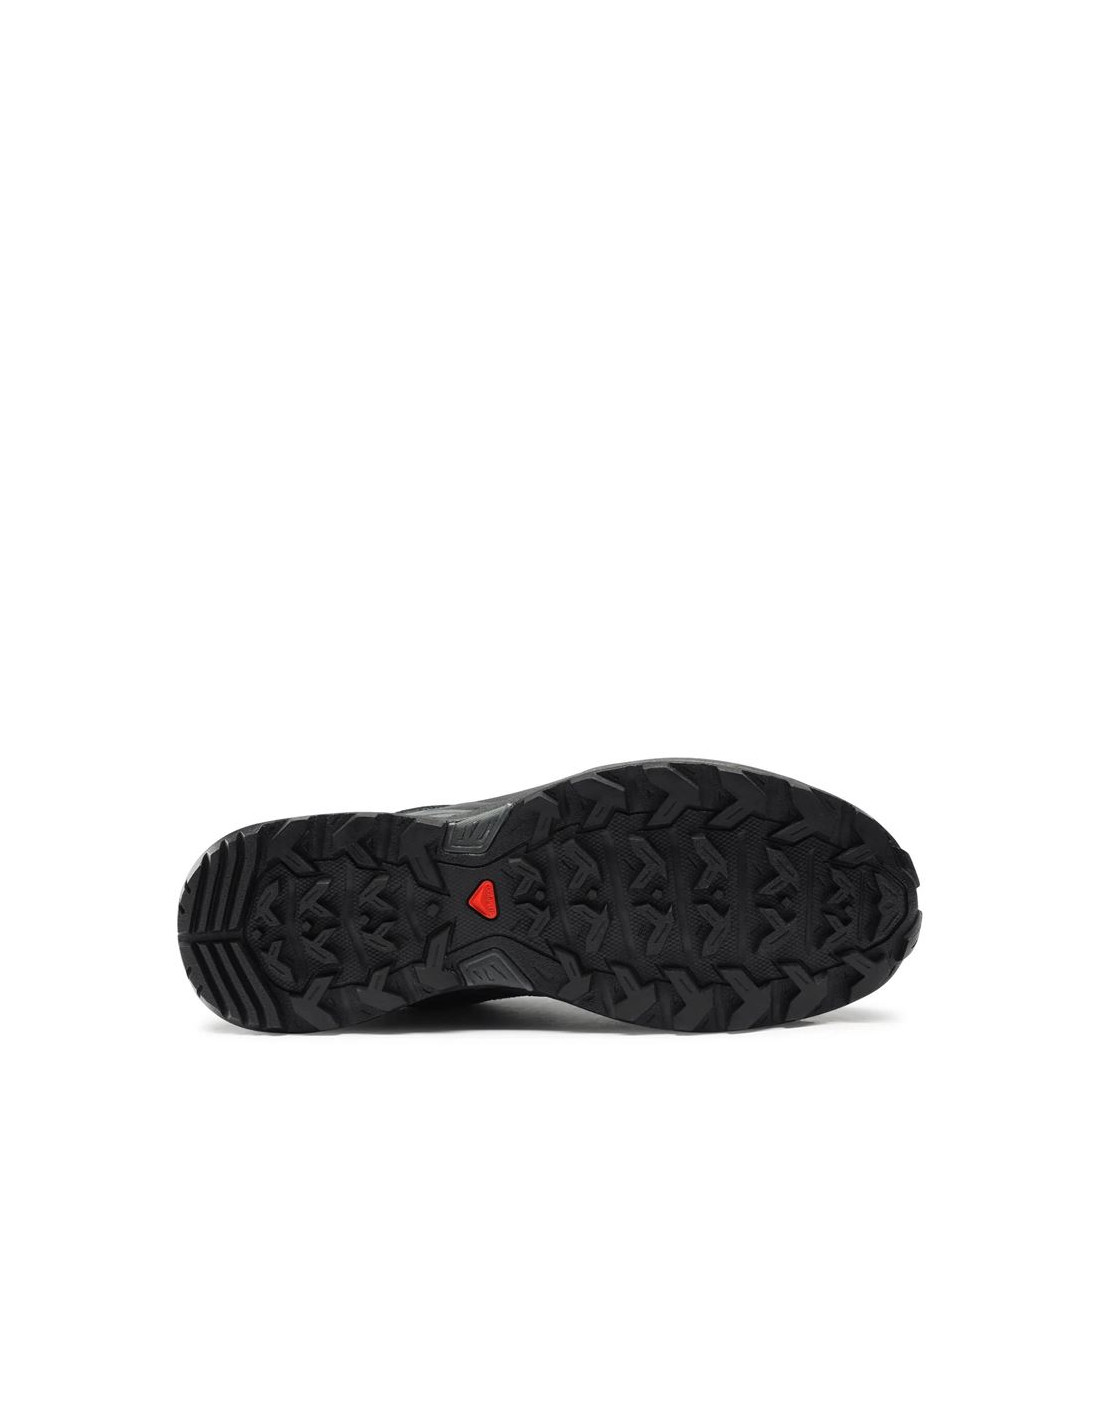 Zapatillas de Montaña Salomon X Ultra Pioneer Gore-Tex Negro/Gris